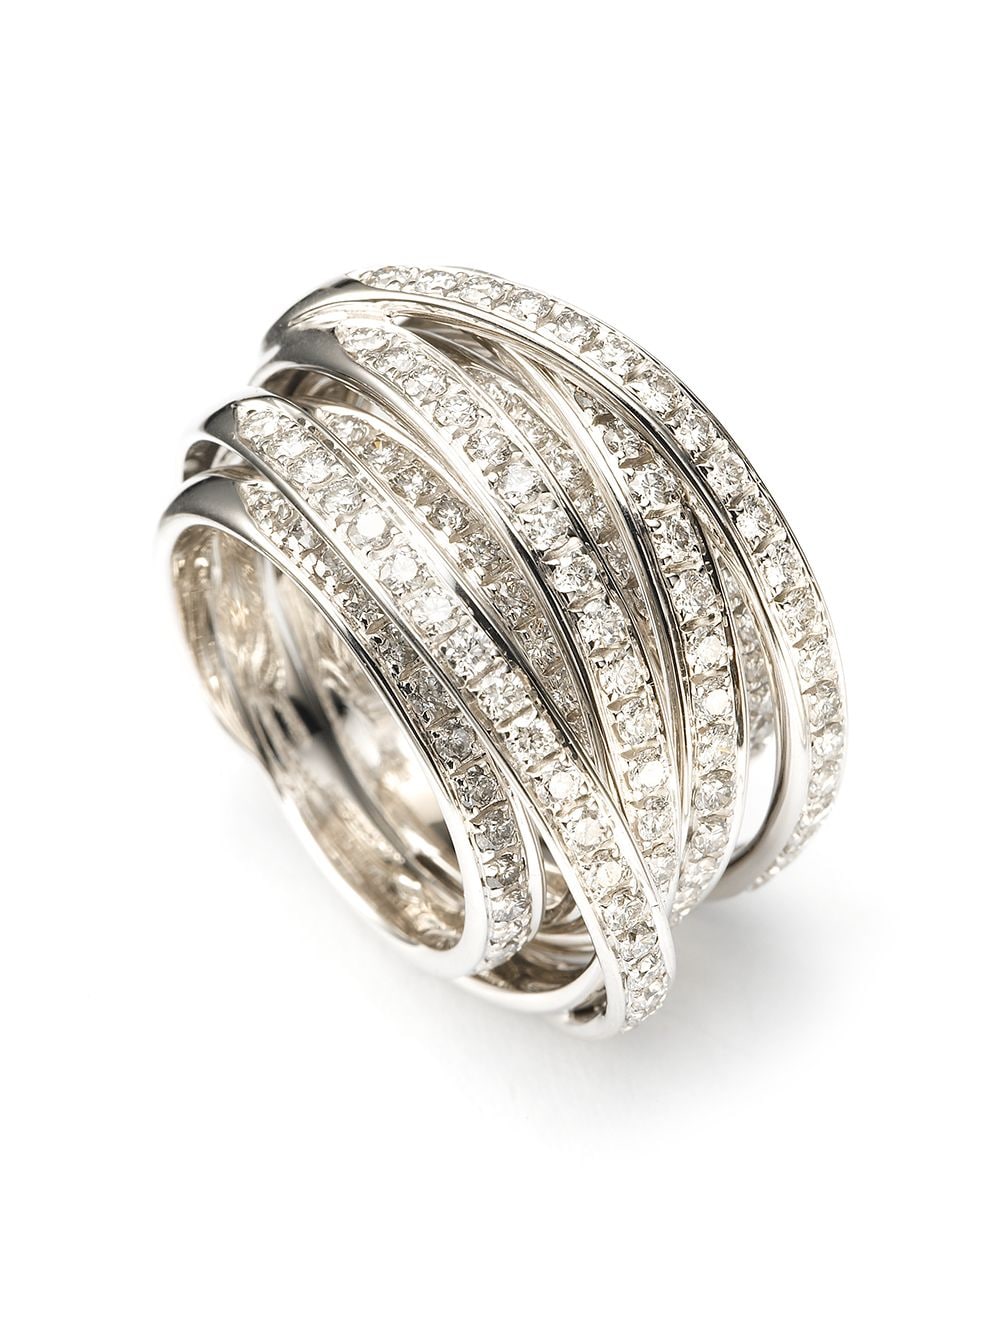 Mattioli 18k白金钻石线圈造型戒指 In Silver